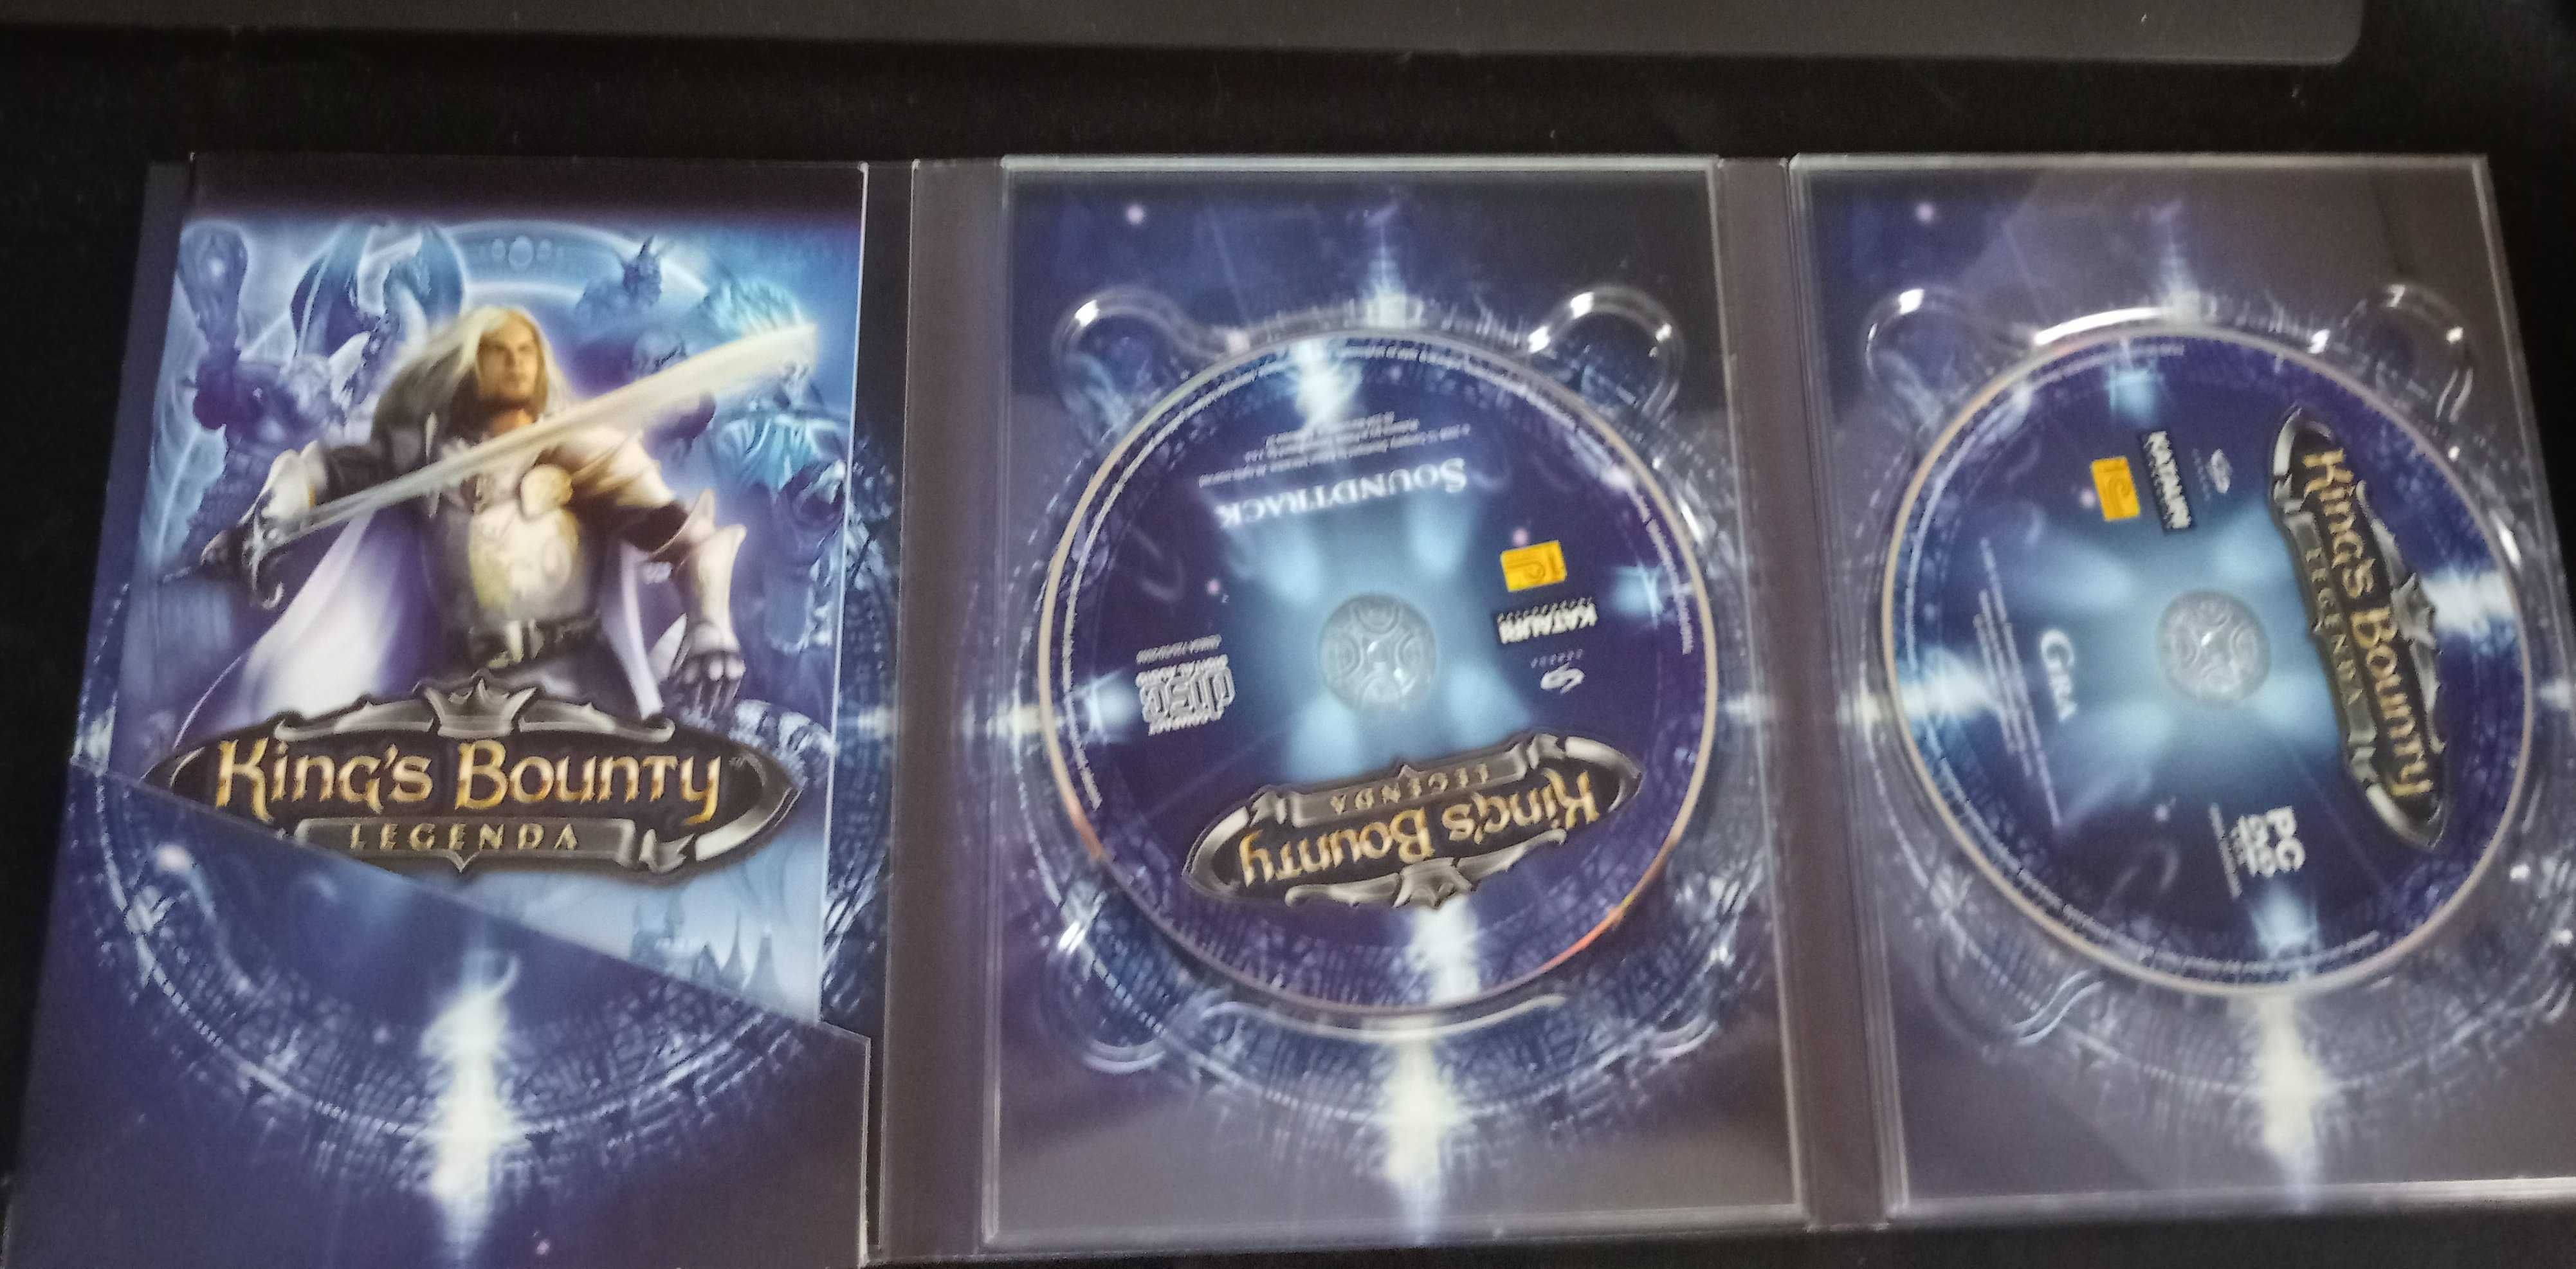 King's Bounty - Legenda PC PL kolekcjonerskie wydanie